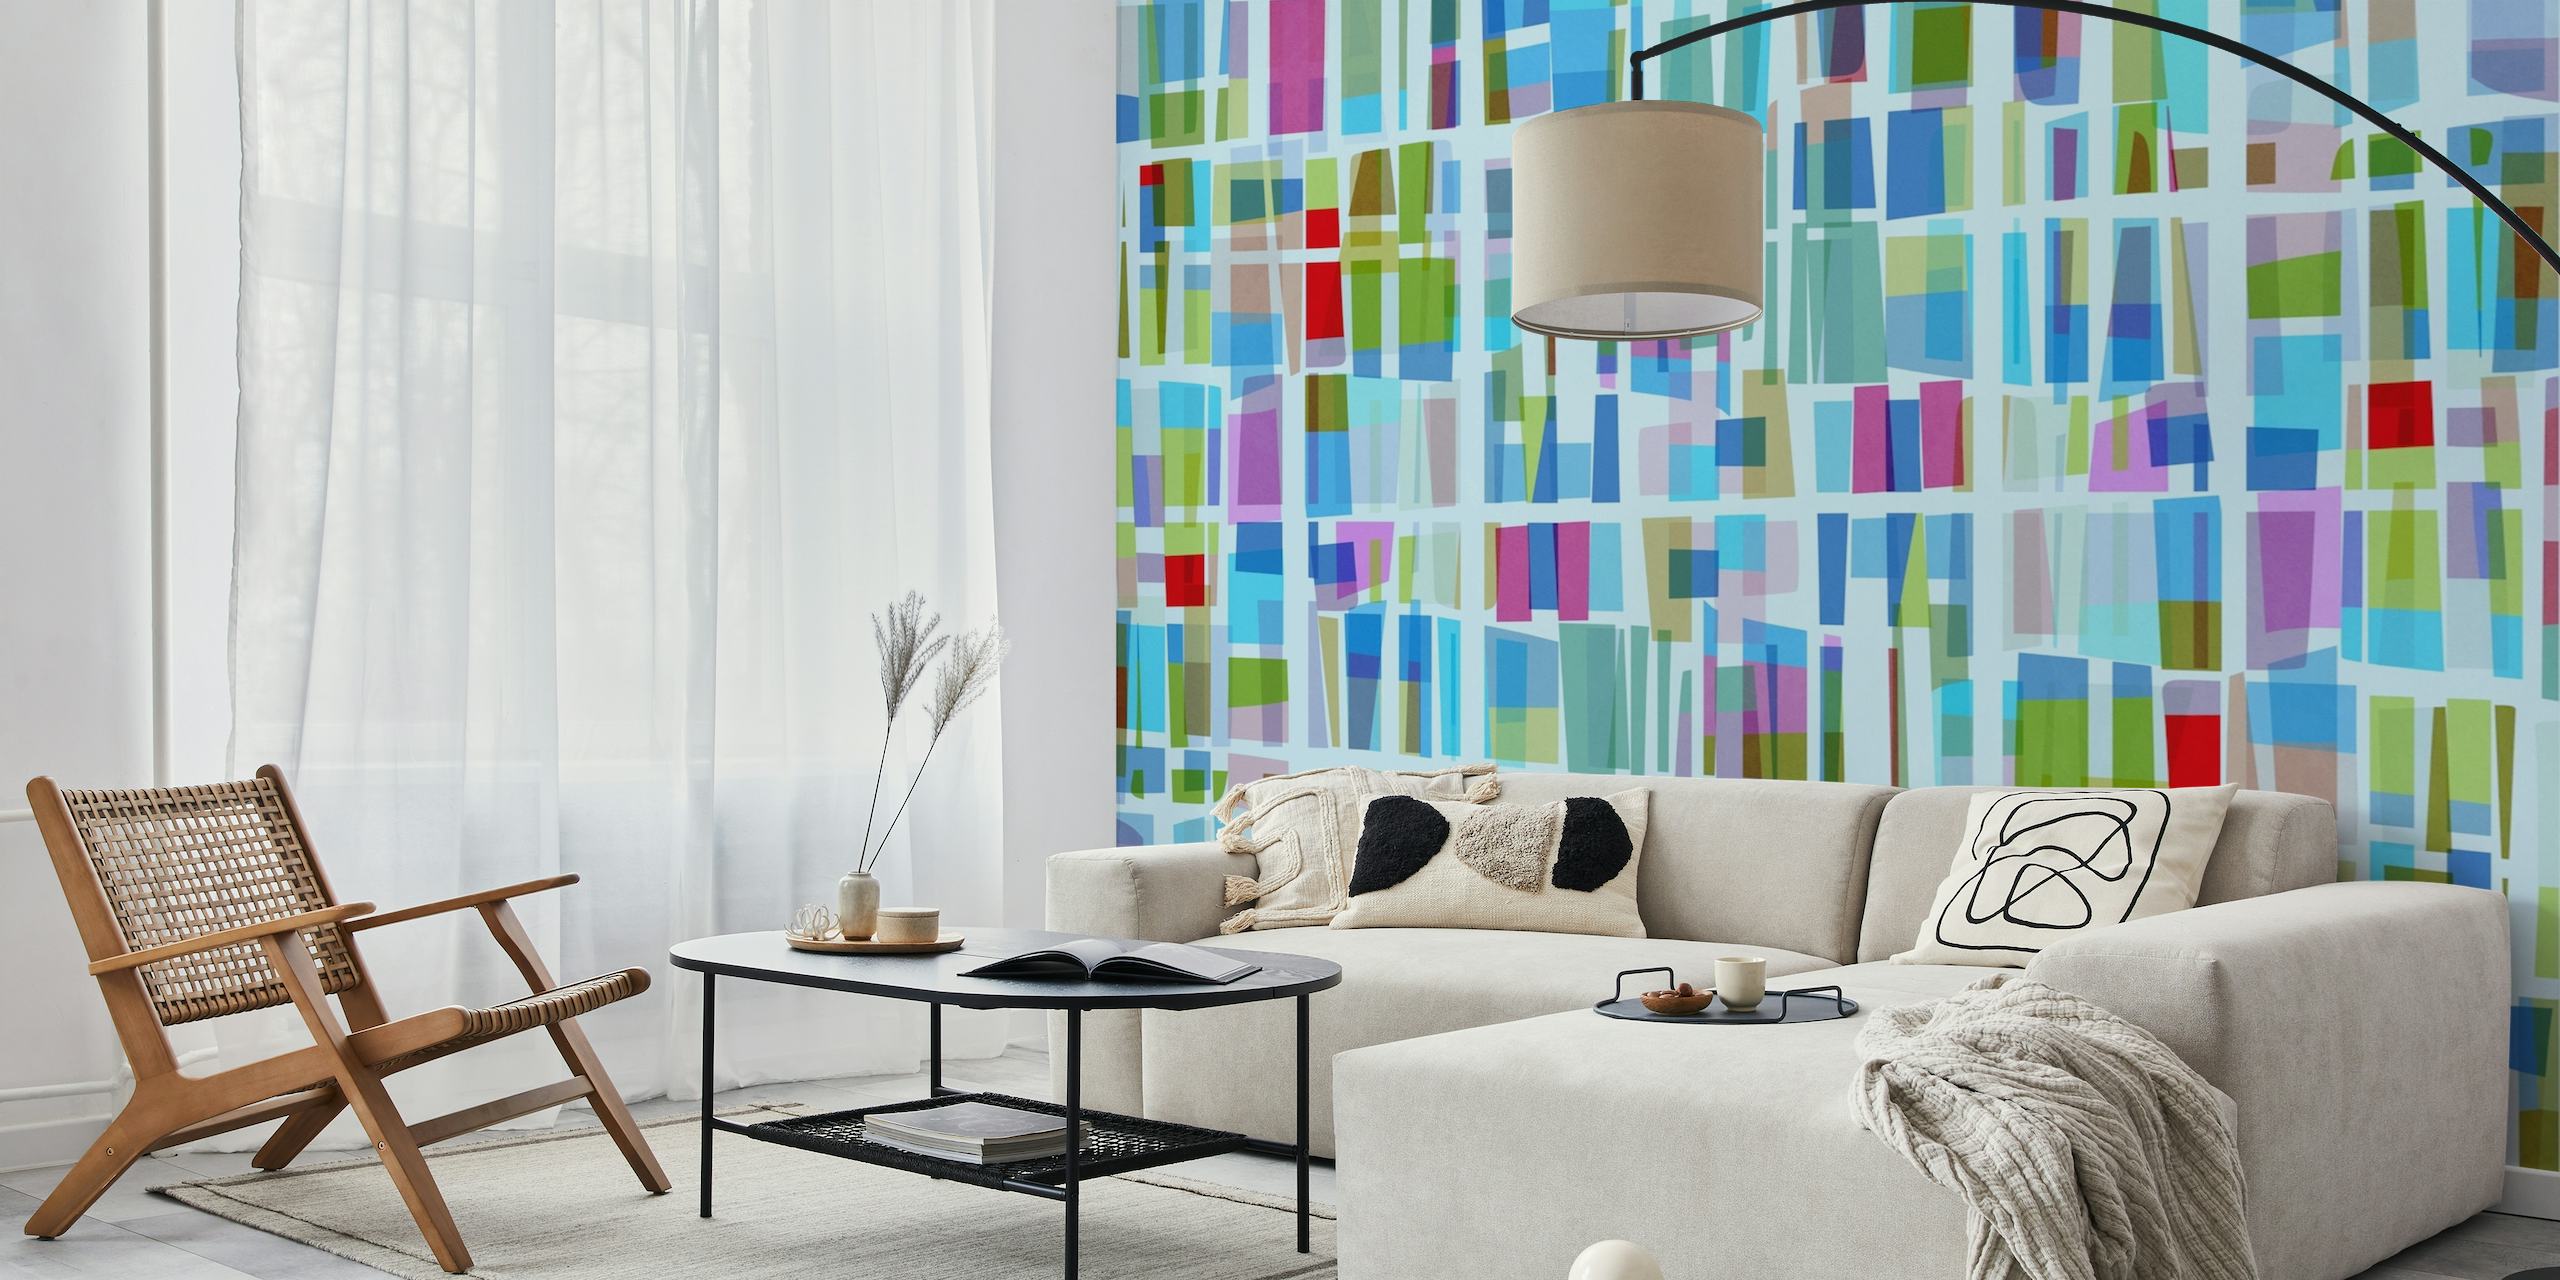 Abstract 'Bluish Square' fotobehang met een geometrisch patroon van blauw, groen en accenten van roze en paars